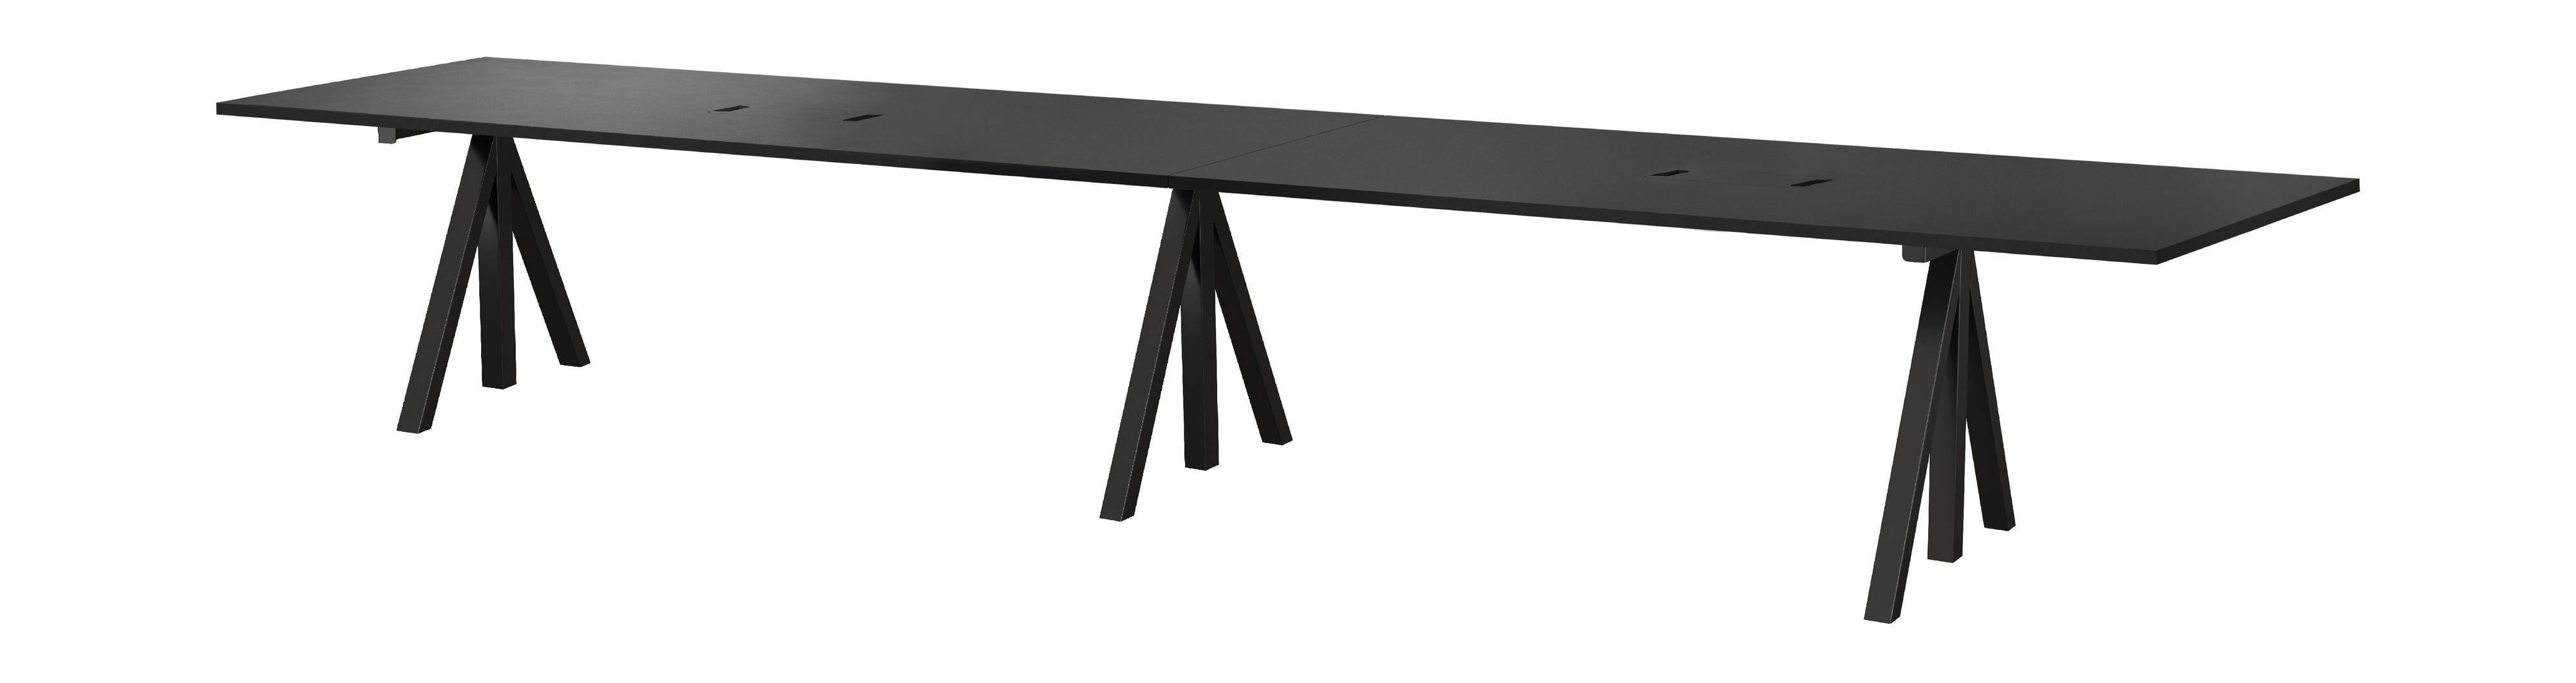 String Furniture Korkeuden säädettävä konferenssitaulukko 90x180 cm, musta/musta